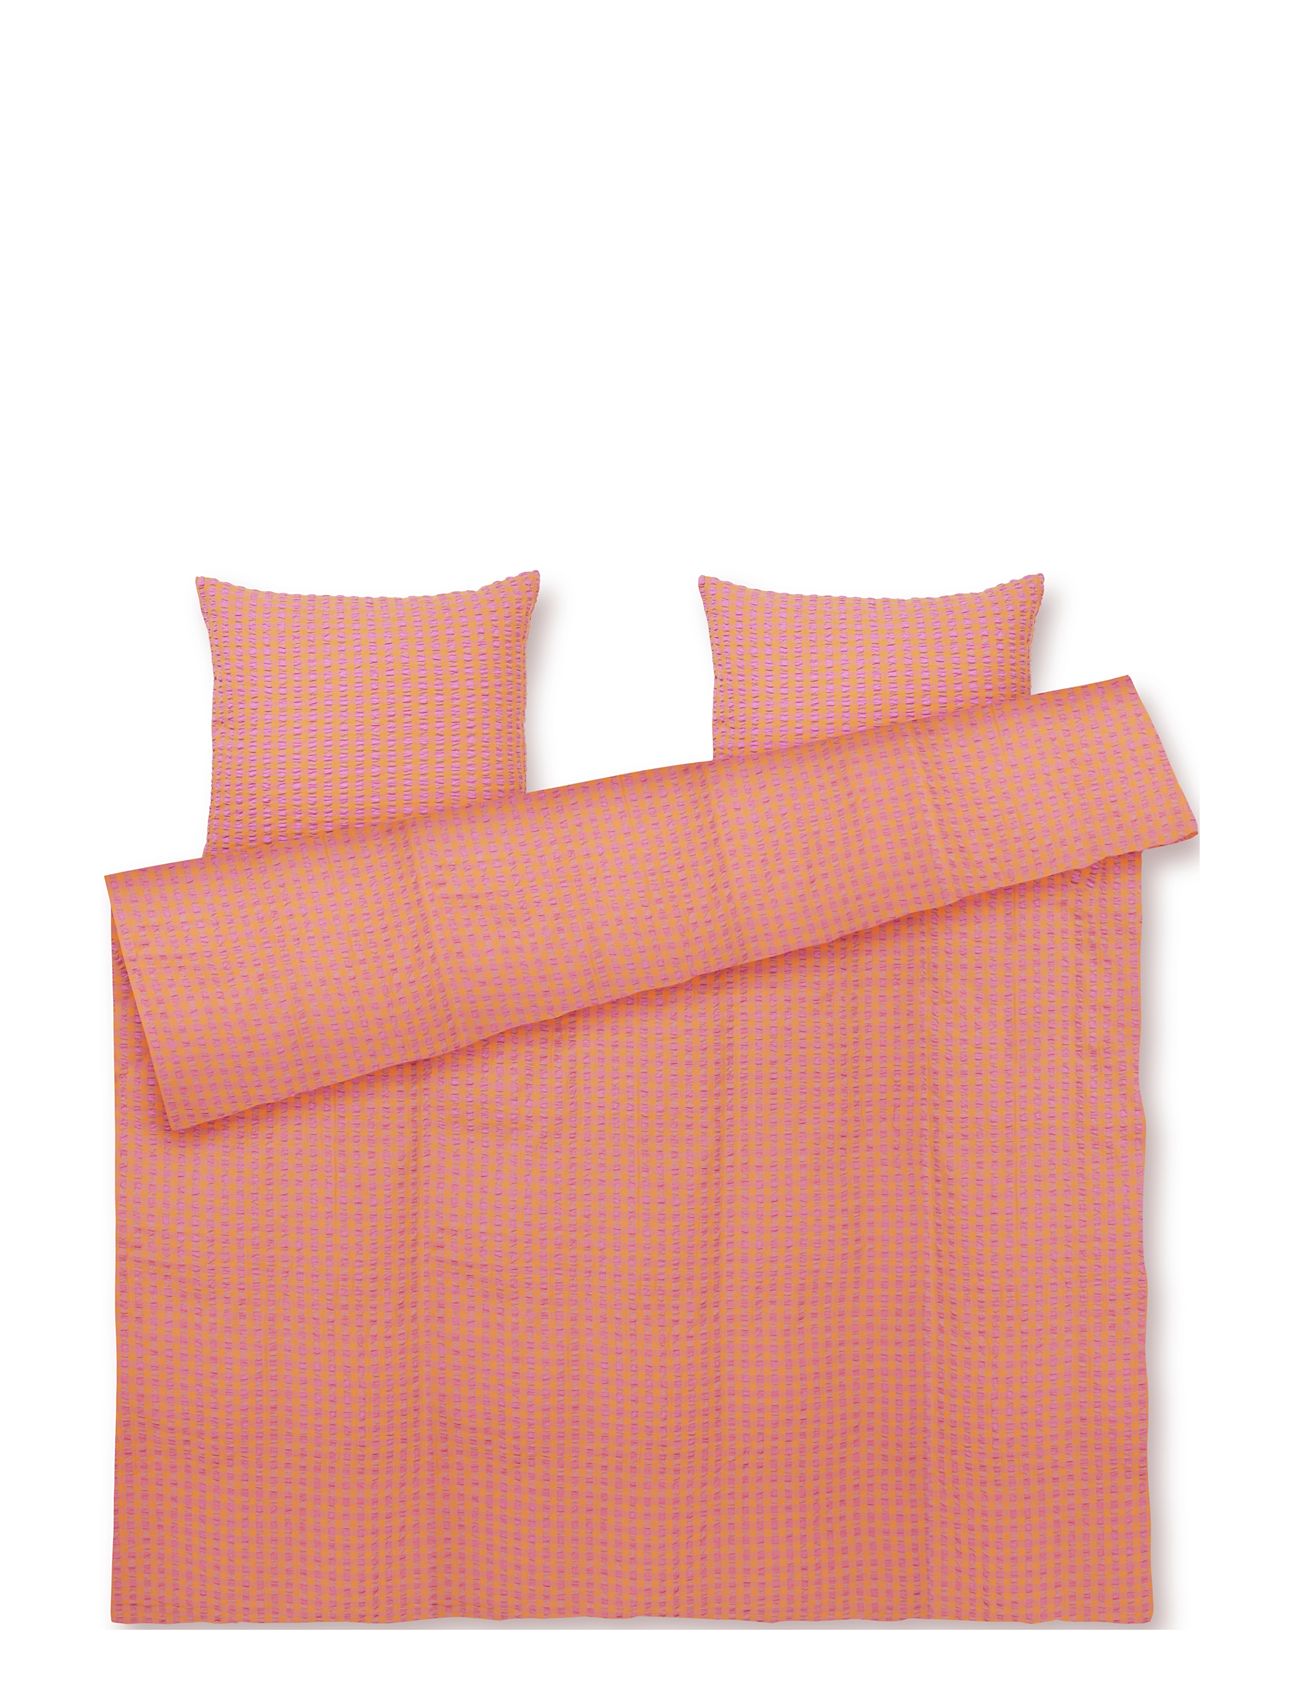 Bæk&Bølge Sengetøj 200X220 Cm Pink/Orange Dk Home Textiles Bedtextiles Bed Sets Coral Juna